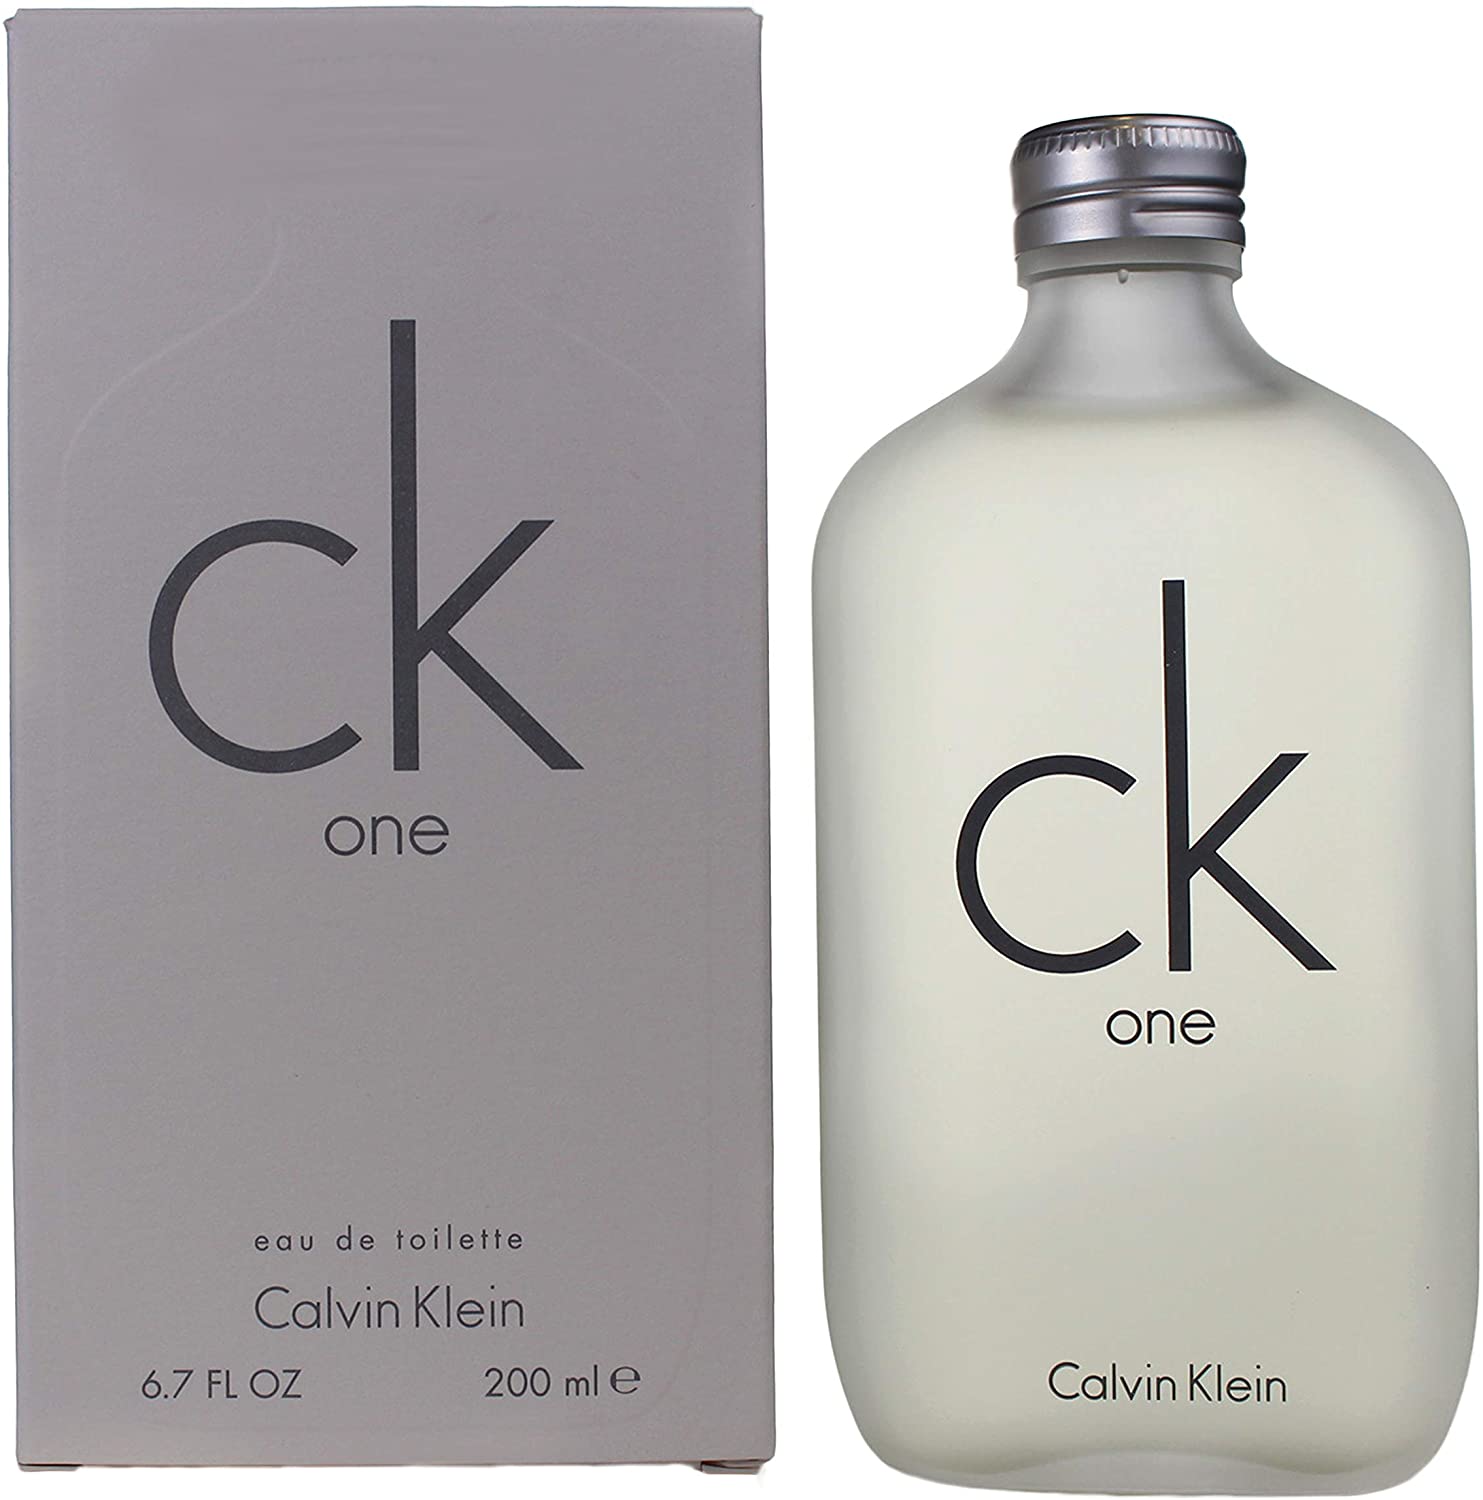  CK One EDT (Calvin Klein)